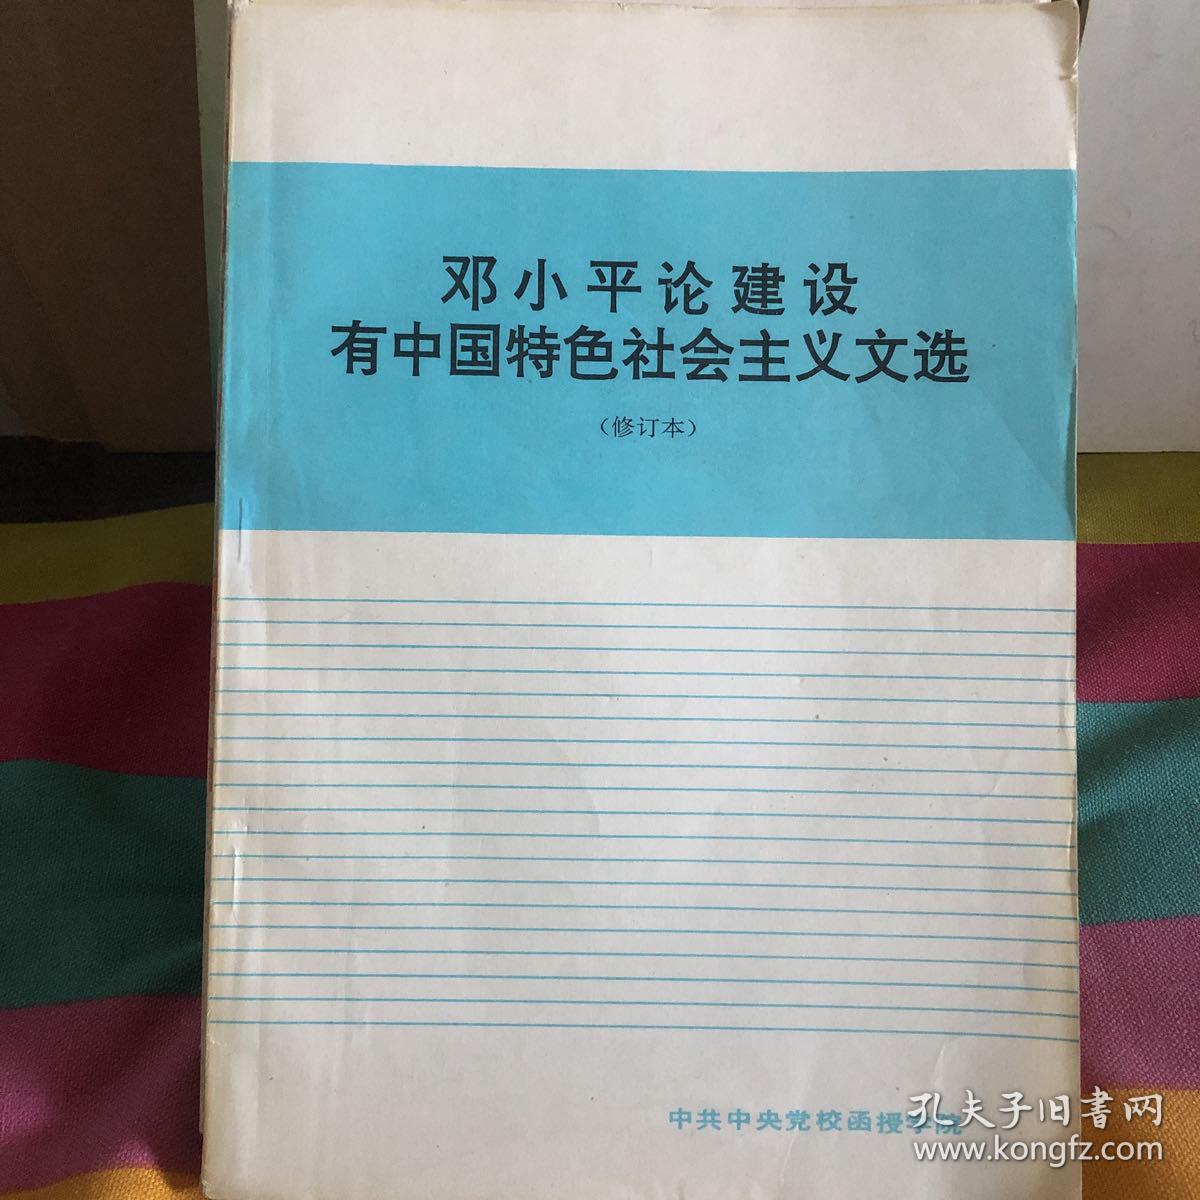 邓小平论建设有中国特色社会主义文选 修订本